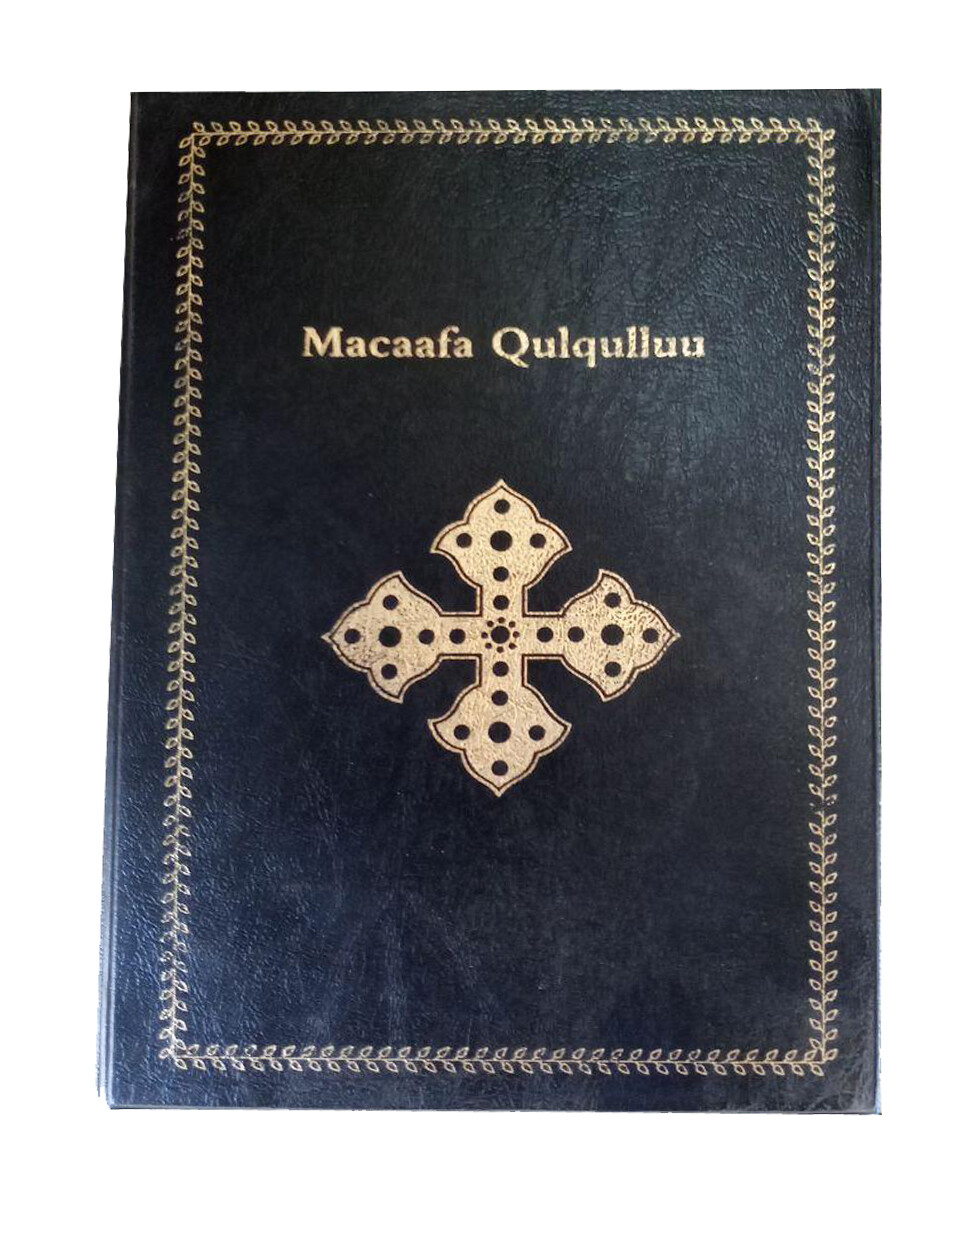 የኦሮምኛ መጽሃፍ ቅዱስ Macaafa Qulqulluu Afaan Oromo Bible